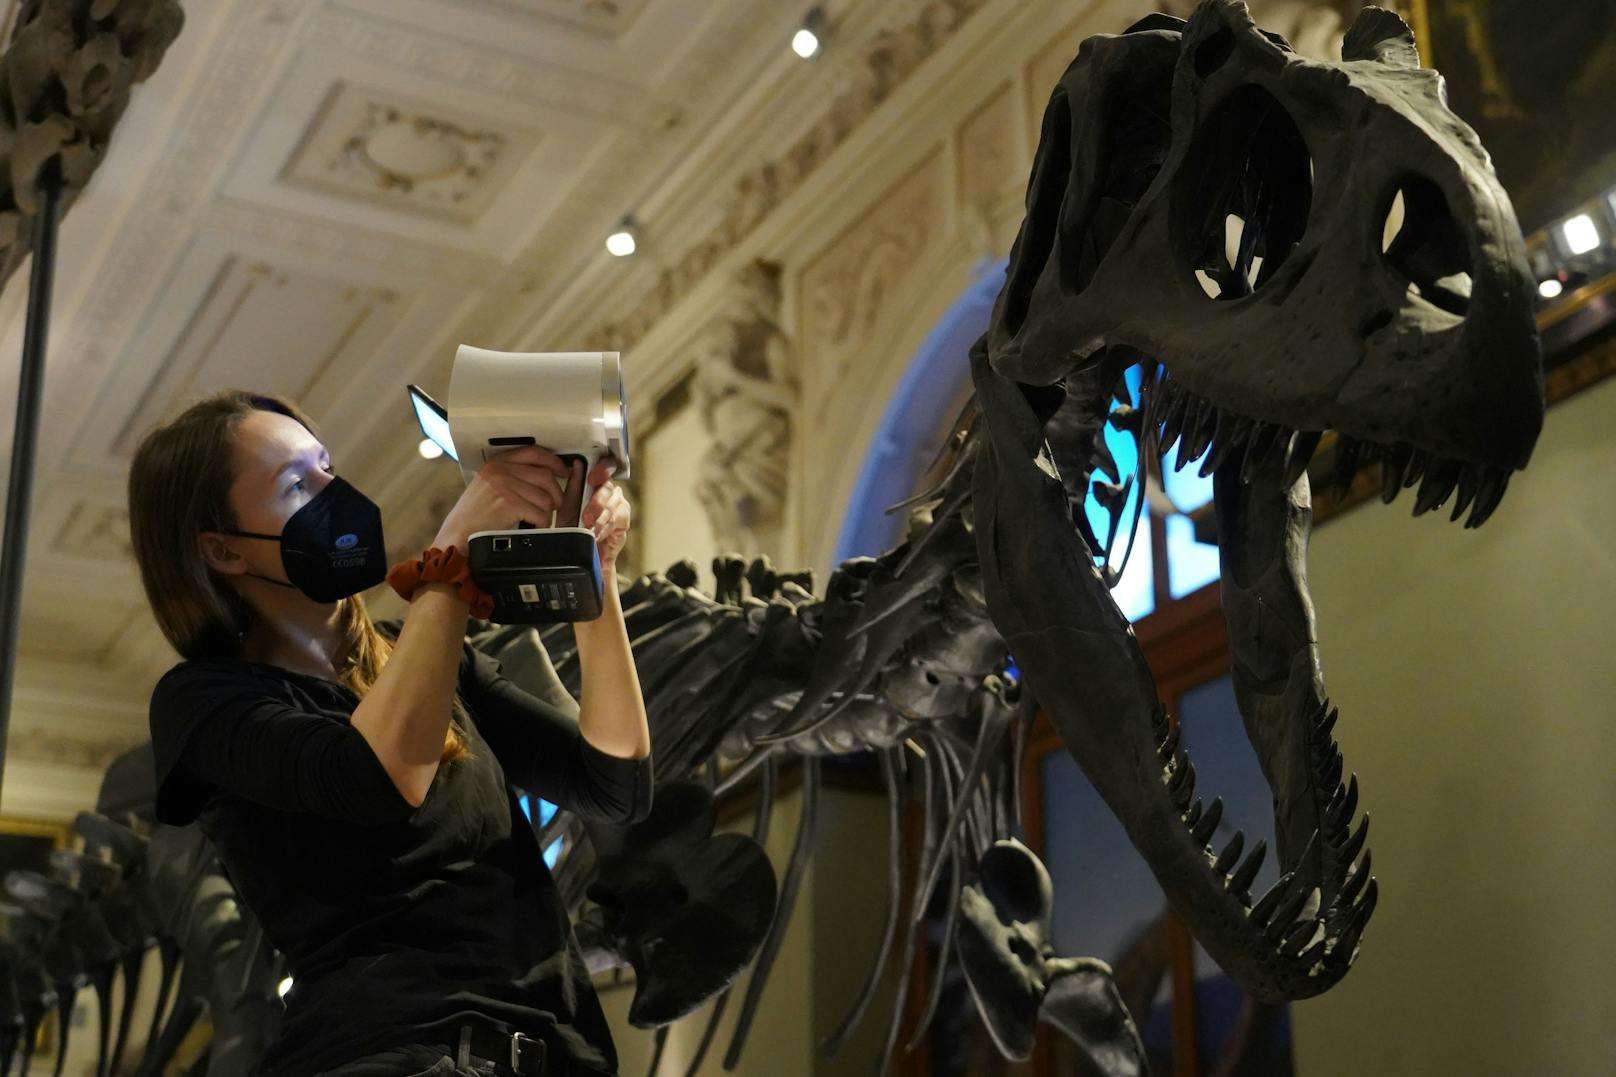 Das D in 3D steht im Naturhistorischen Museum Wien jetzt für Dinosaurier. Ab jetzt können Objekte des Museums auf der webbasierten Plattform Sketchfab digital und in 3D aus neuen Perspektiven betrachtet werden.